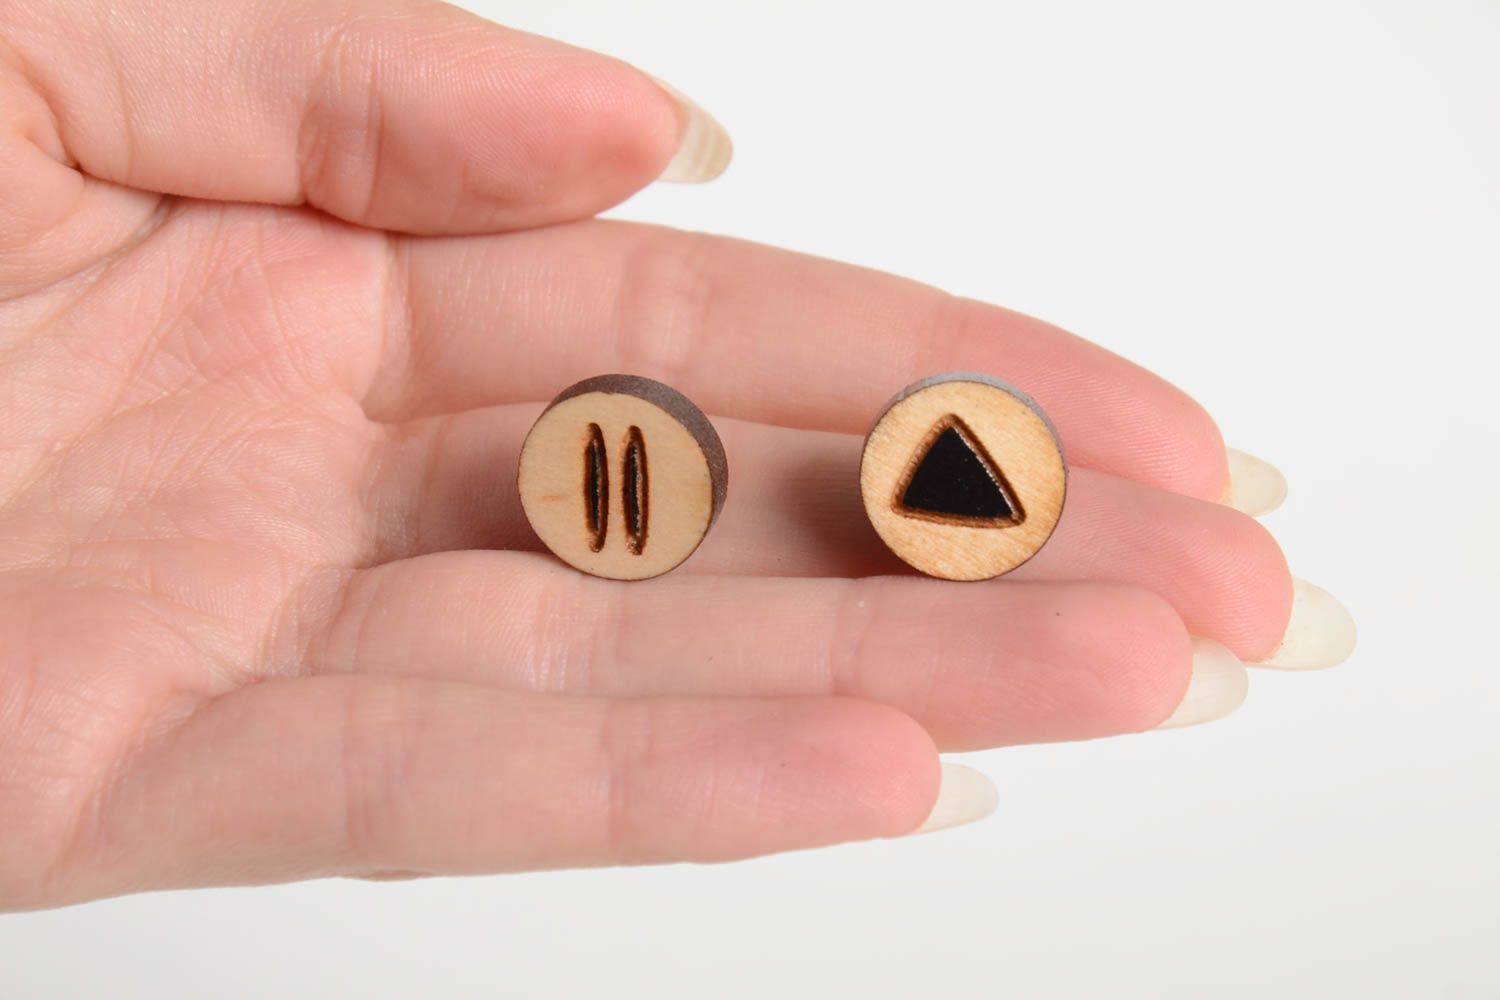 Unusual handmade wooden earrings artisan jewelry designs stud earrings photo 2